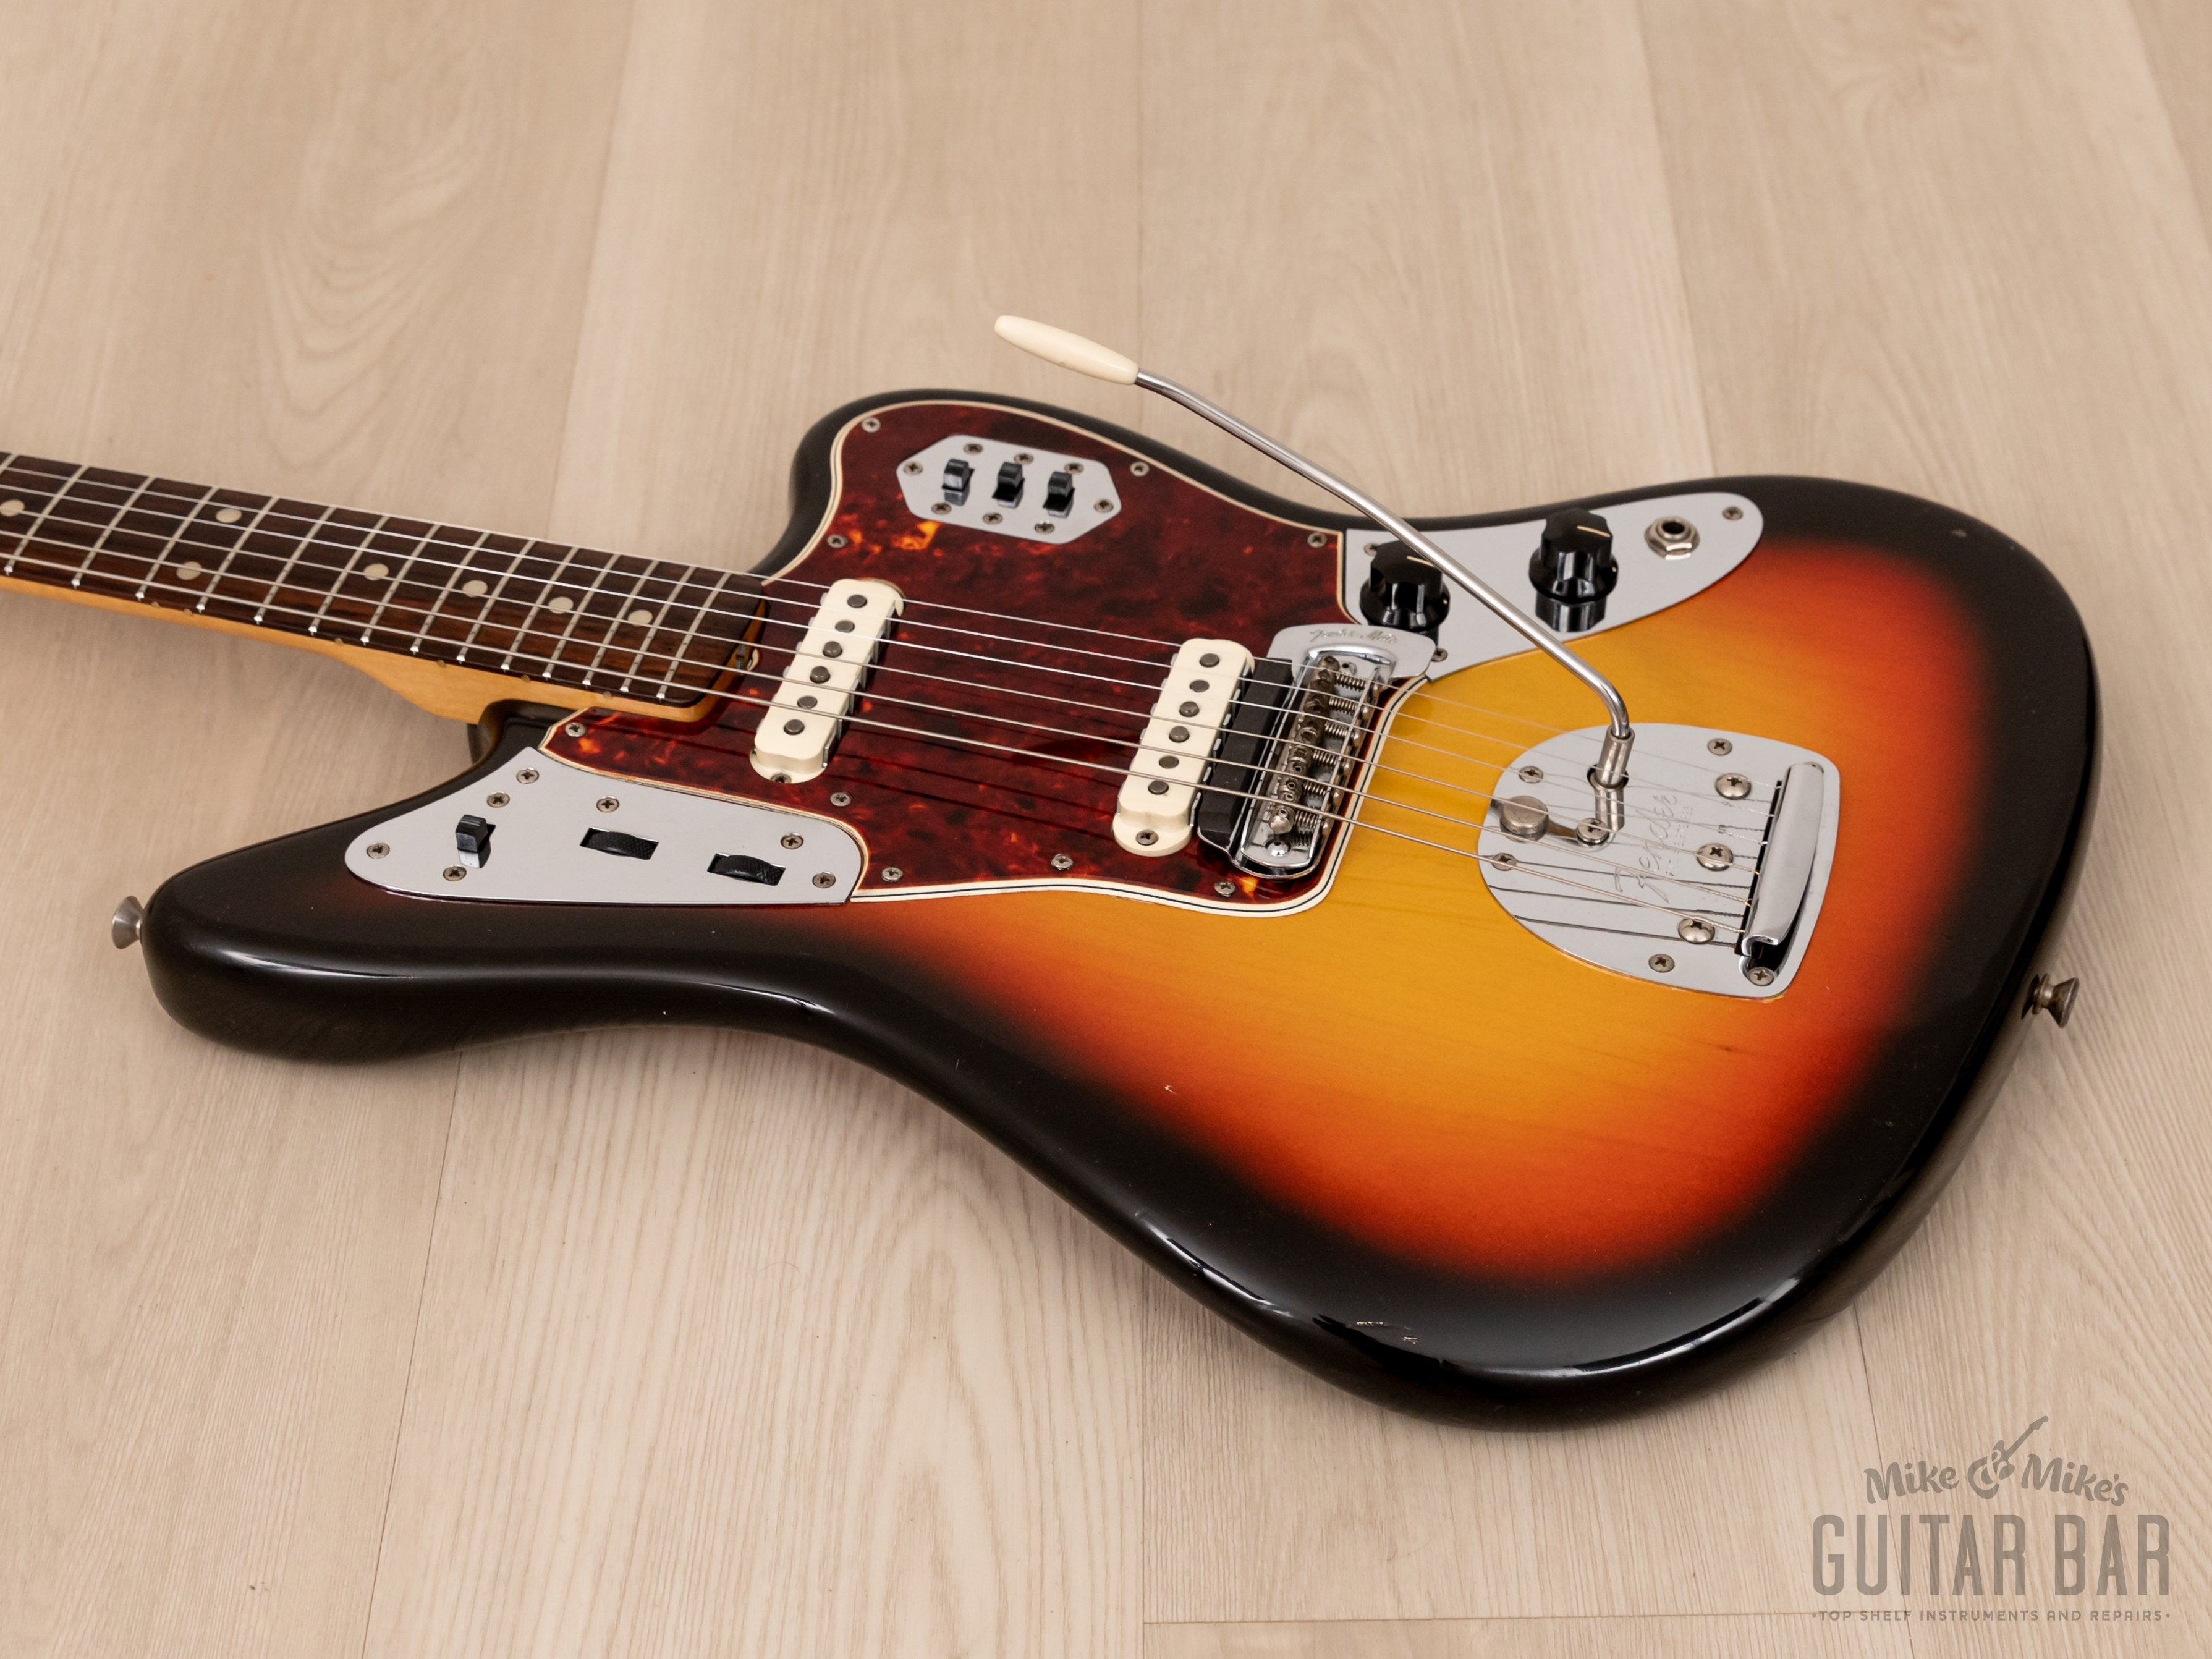 1965 Fender Jaguar Vintage Offset Guitar Sunburst, Collector Grade w/ Case